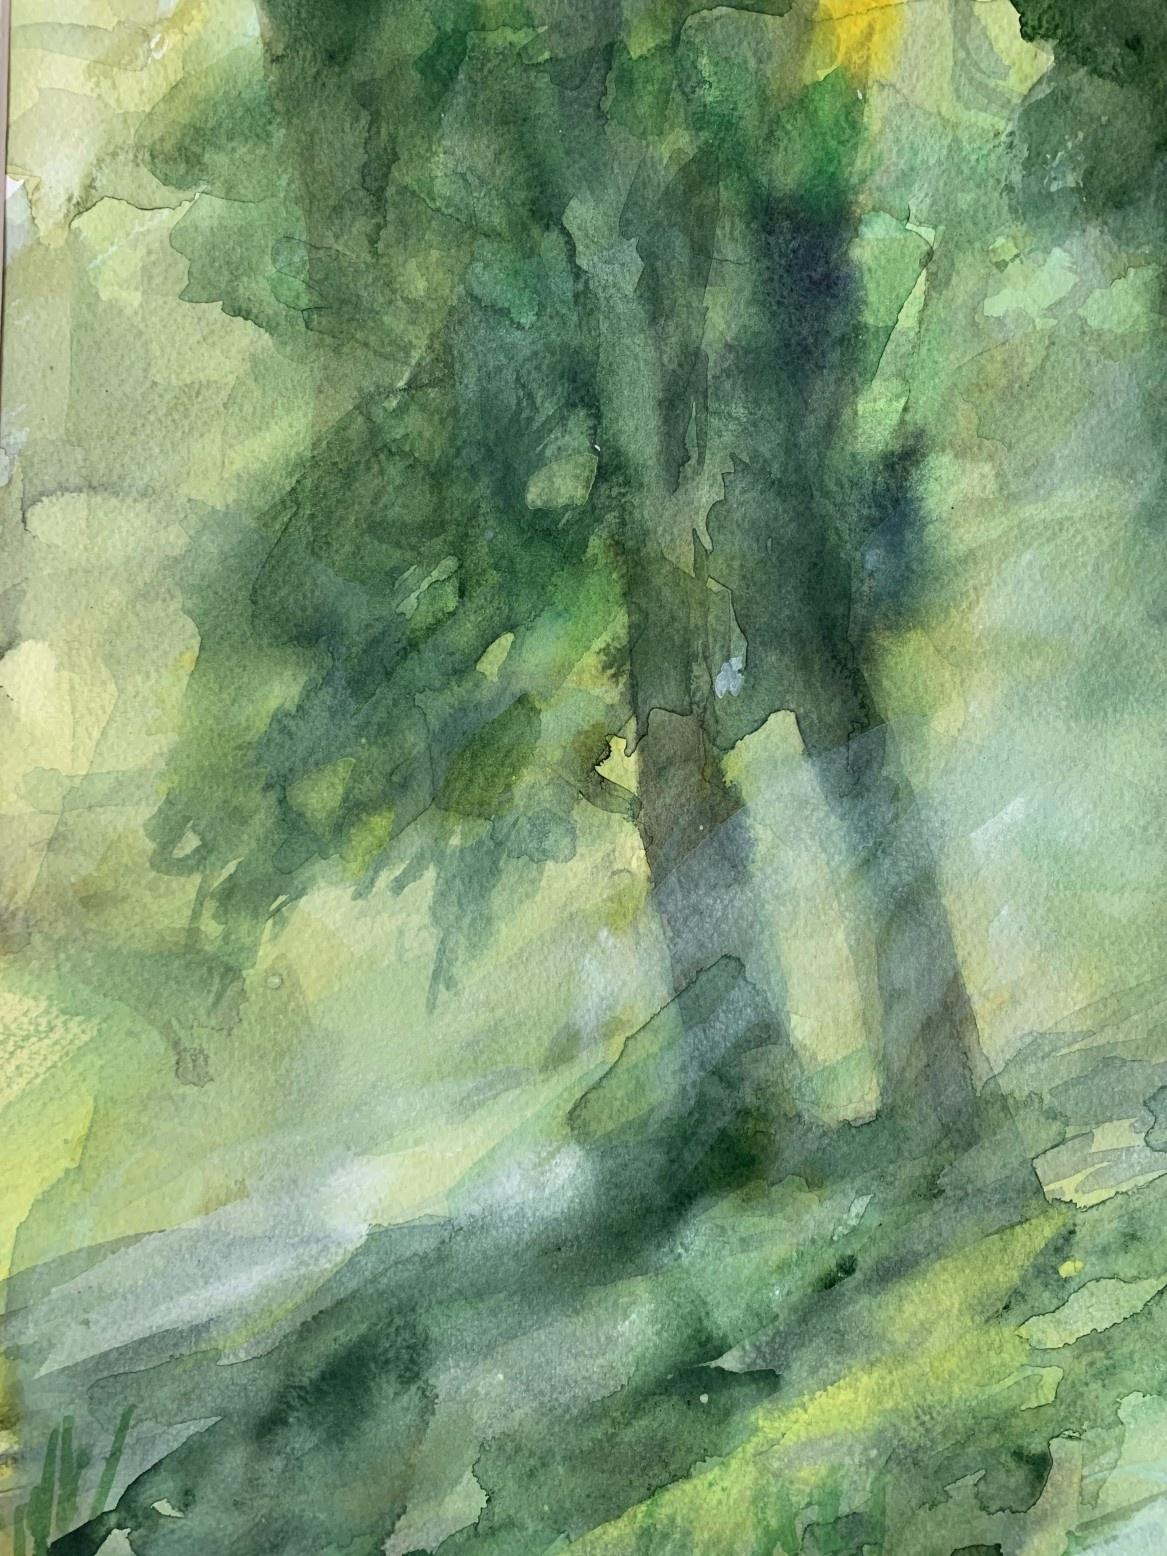 A forest bridge. Watercolor, Realistic, Landscape, Classic, Polish artist - Gray Figurative Art by Włodzimierz Karczmarzyk